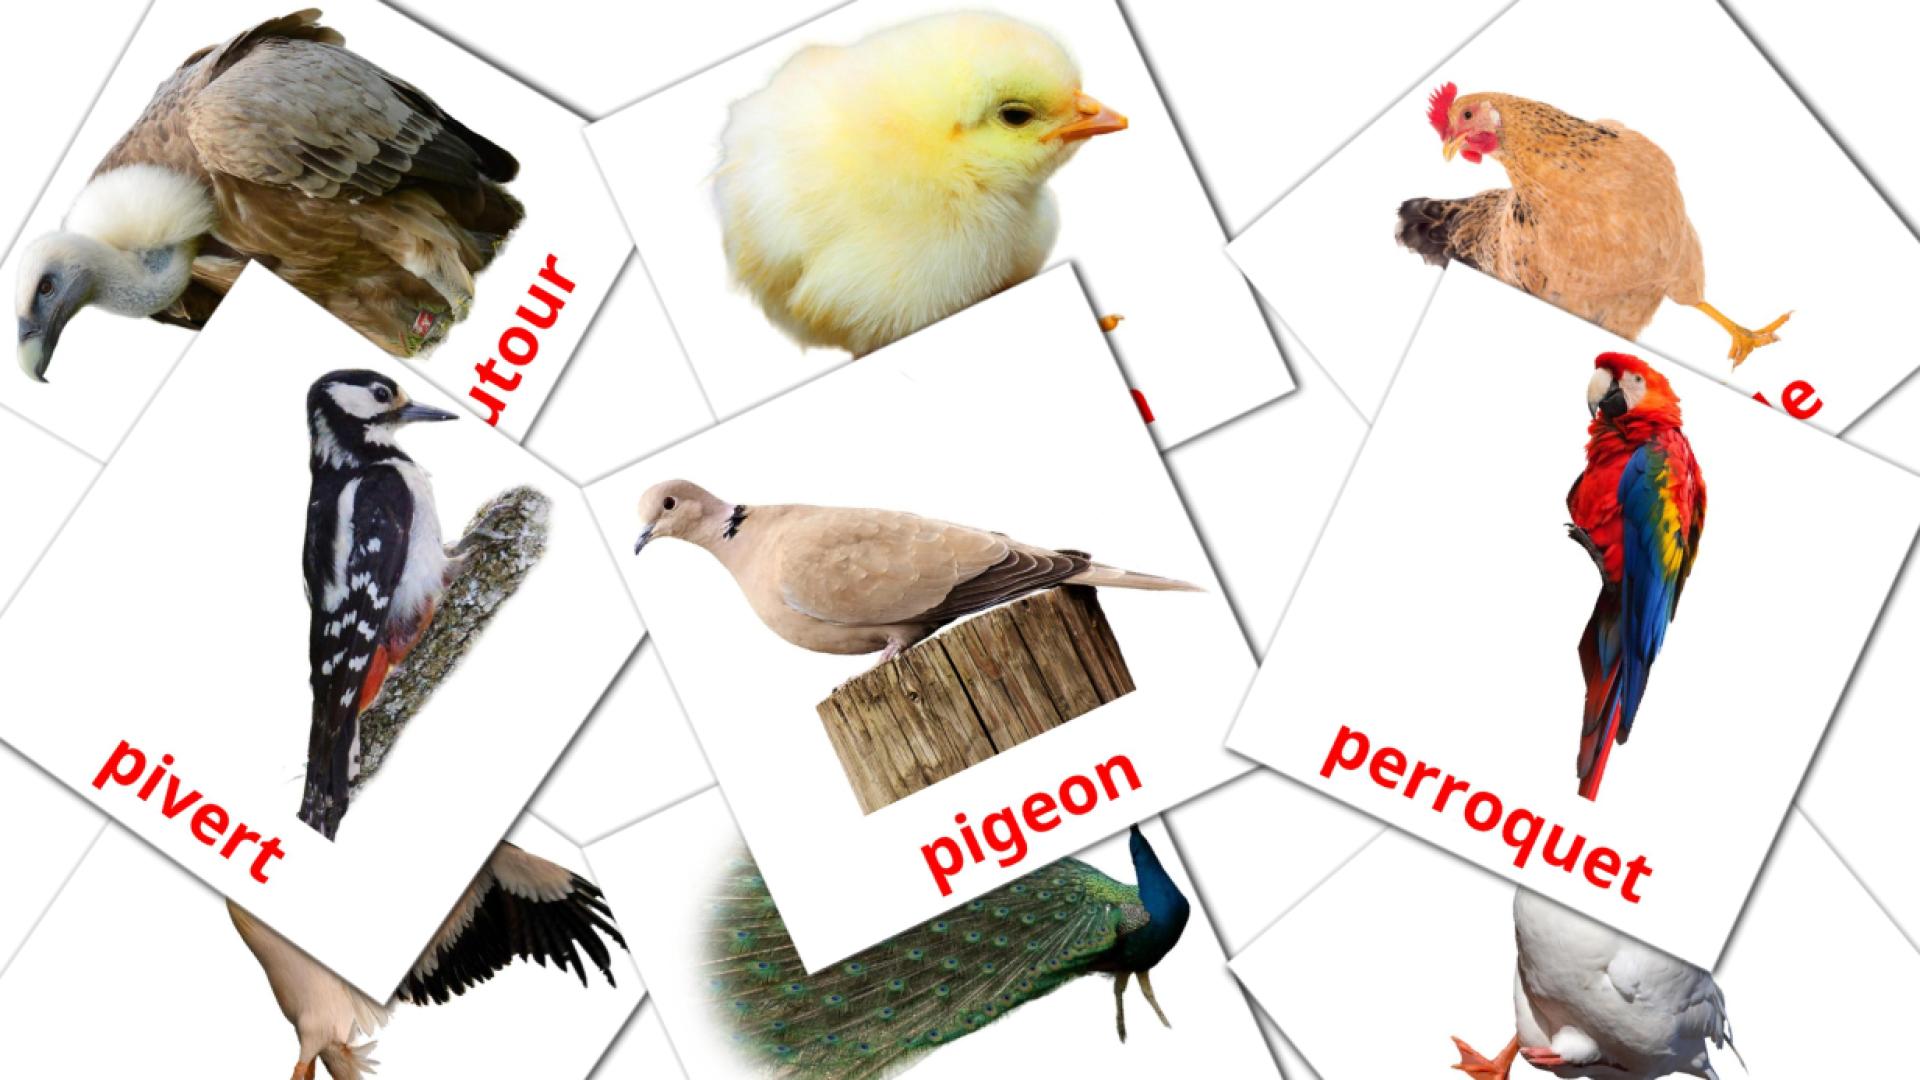 Fiches de vocabulaire amhariquees sur Oiseaux